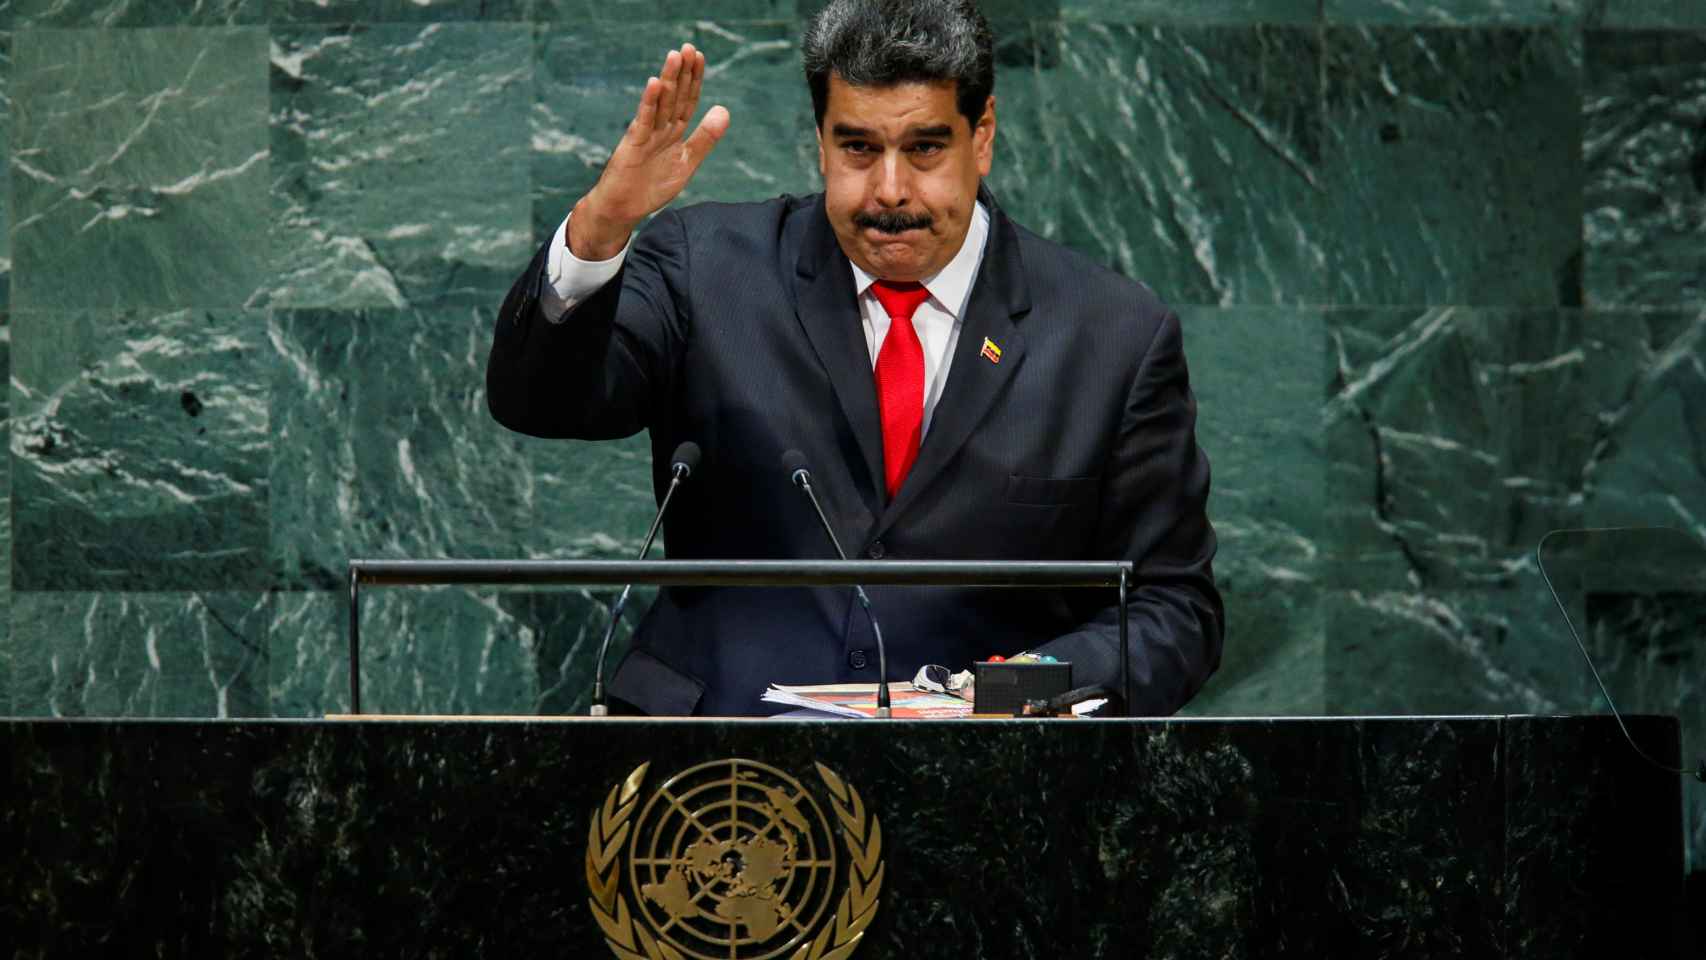 Nicolás Maduro durante su intervención en la ONU.